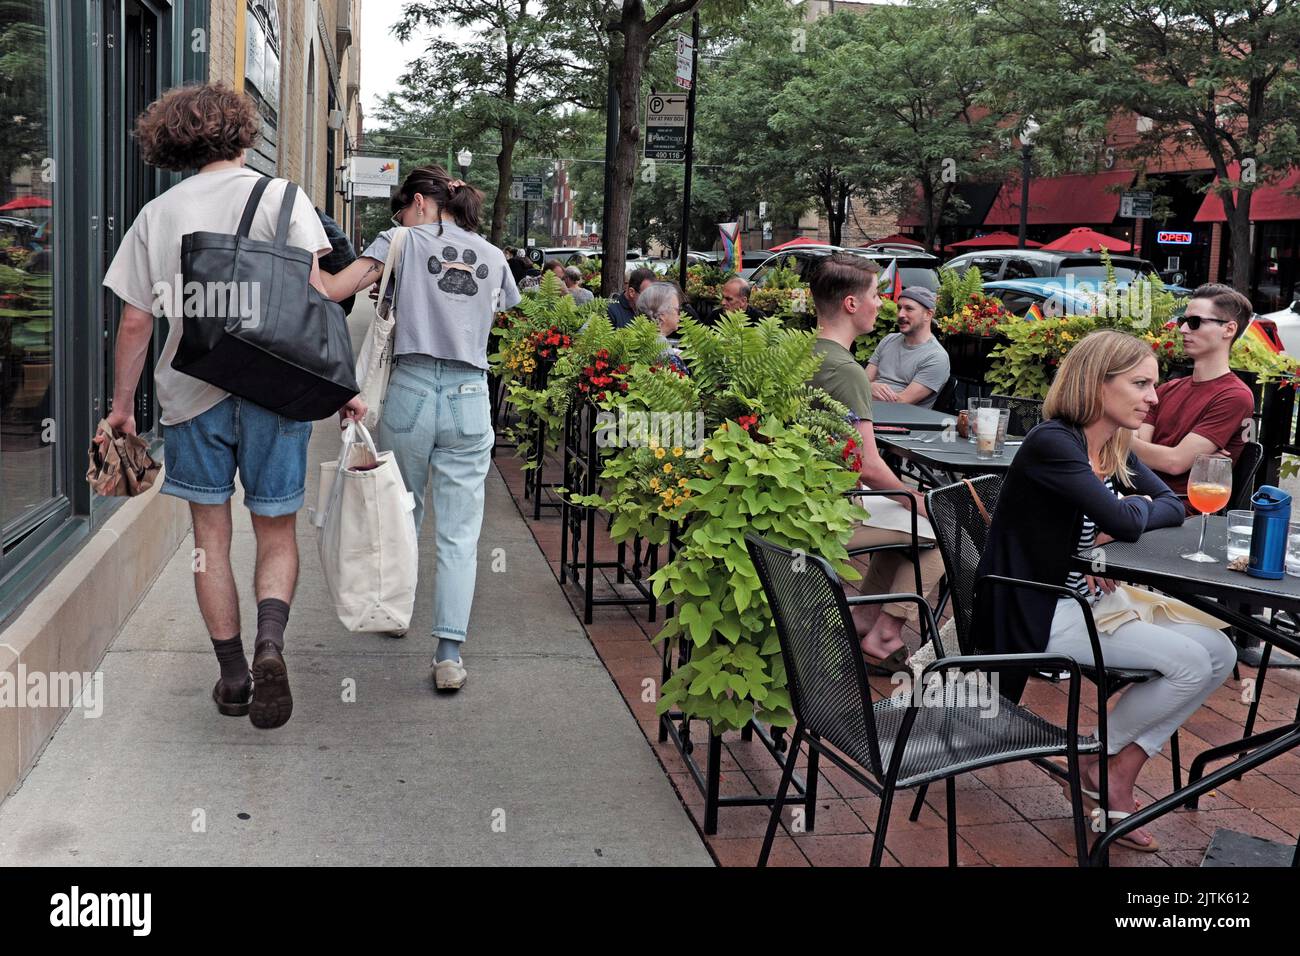 La gente cena afuera durante una tarde mientras los peatones caminan por la acera en el vecindario Andersonville en Chicago, Illinois, EE.UU. Foto de stock